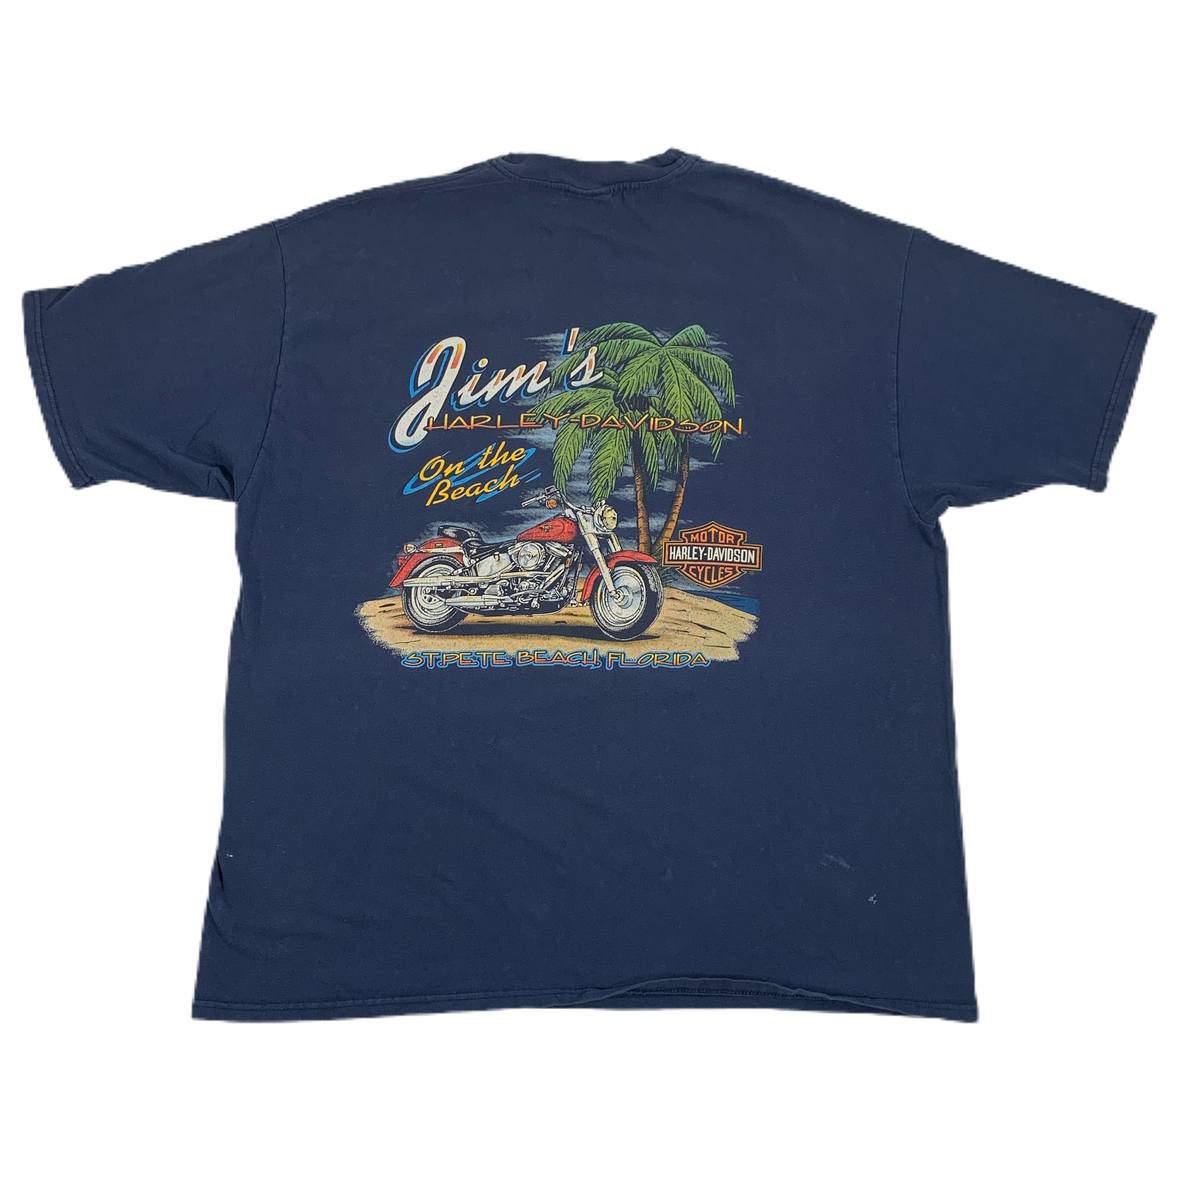 Vintage Harley-Davidson &quot;St. Pete Beach&quot; T-Shirt - jointcustodydc